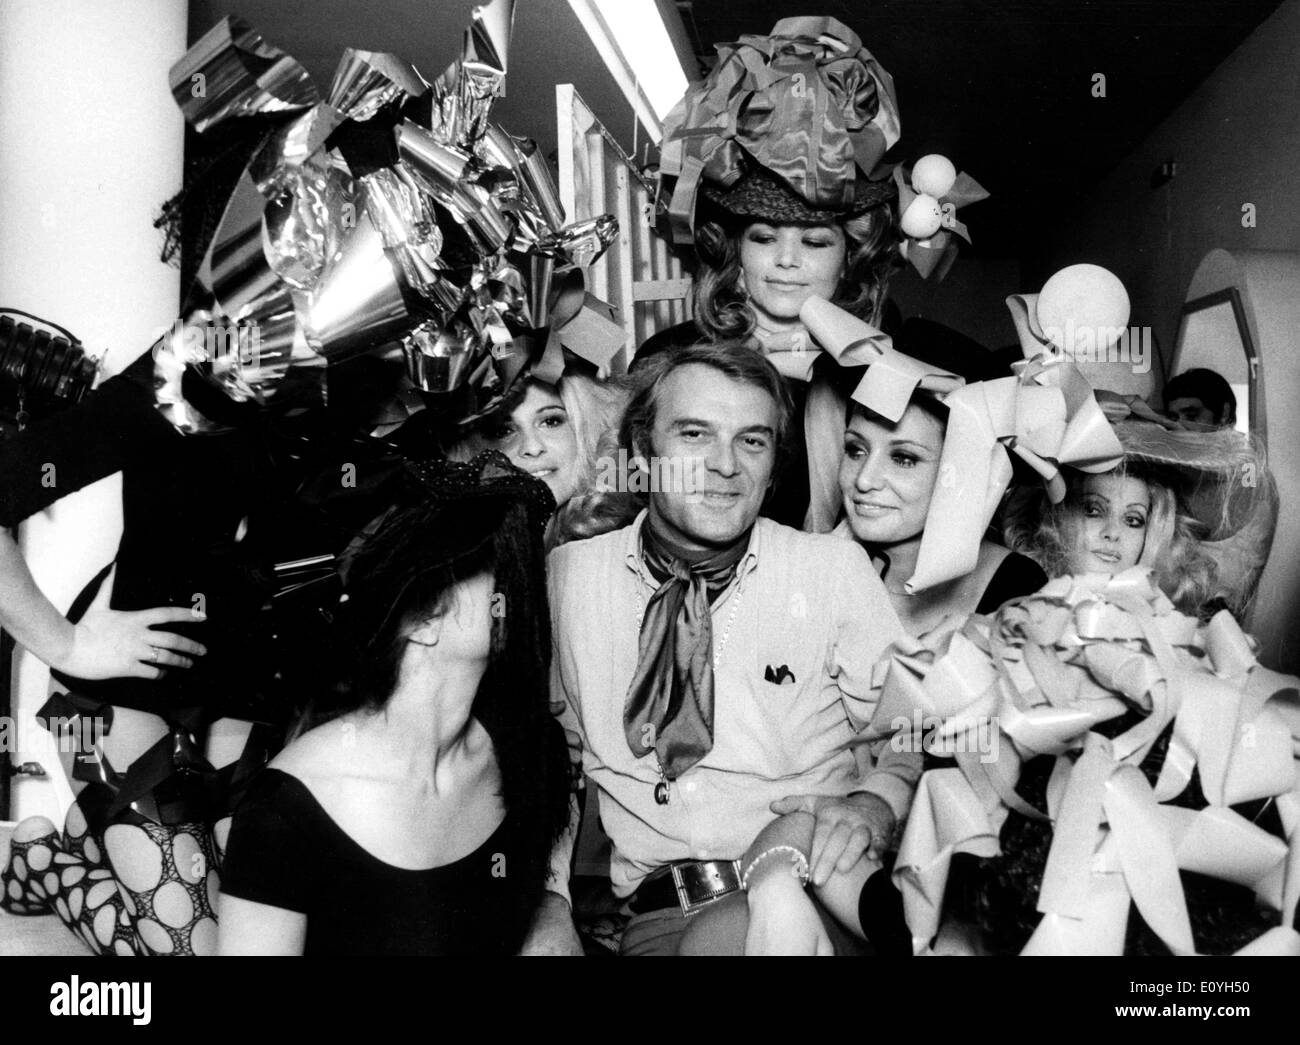 Maggio 14, 1970; Roma, Italia; il ben noto attore italiano Giorgio Albertazzi, famoso per il suo ruolo in 'Dr. Jeckill' Play TV, è di dirigere il suo primo film "Gradiva' in cui apparirà una folla di belle ragazze. La foto mostra Giorgio cerchiato dalle ragazze. Foto Stock